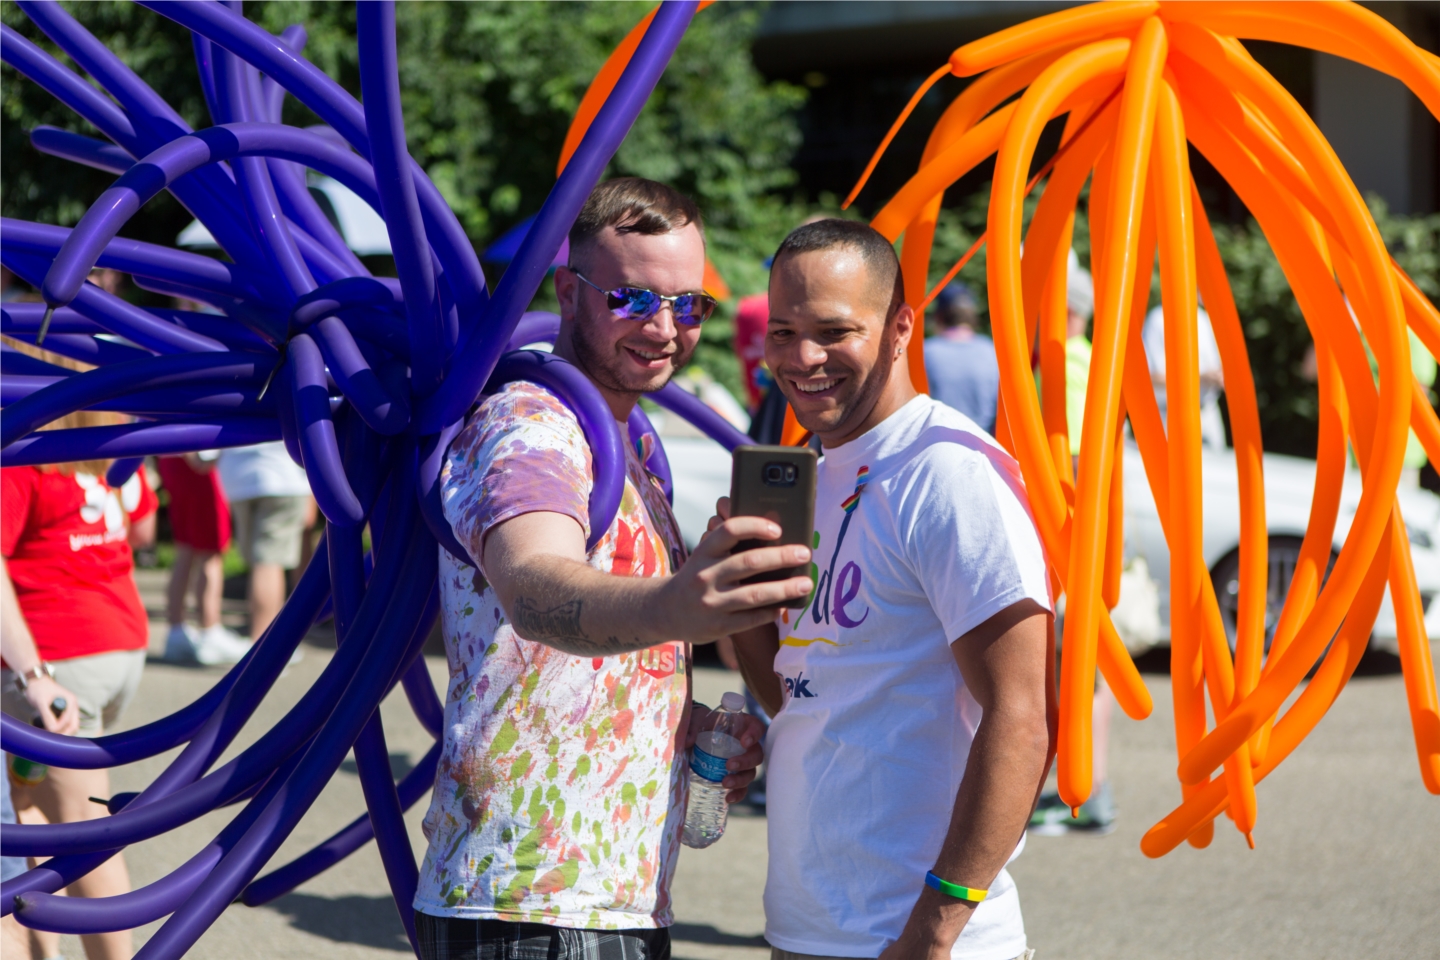 U.S. Bank employees participate in the Cincinnati Pride Parade